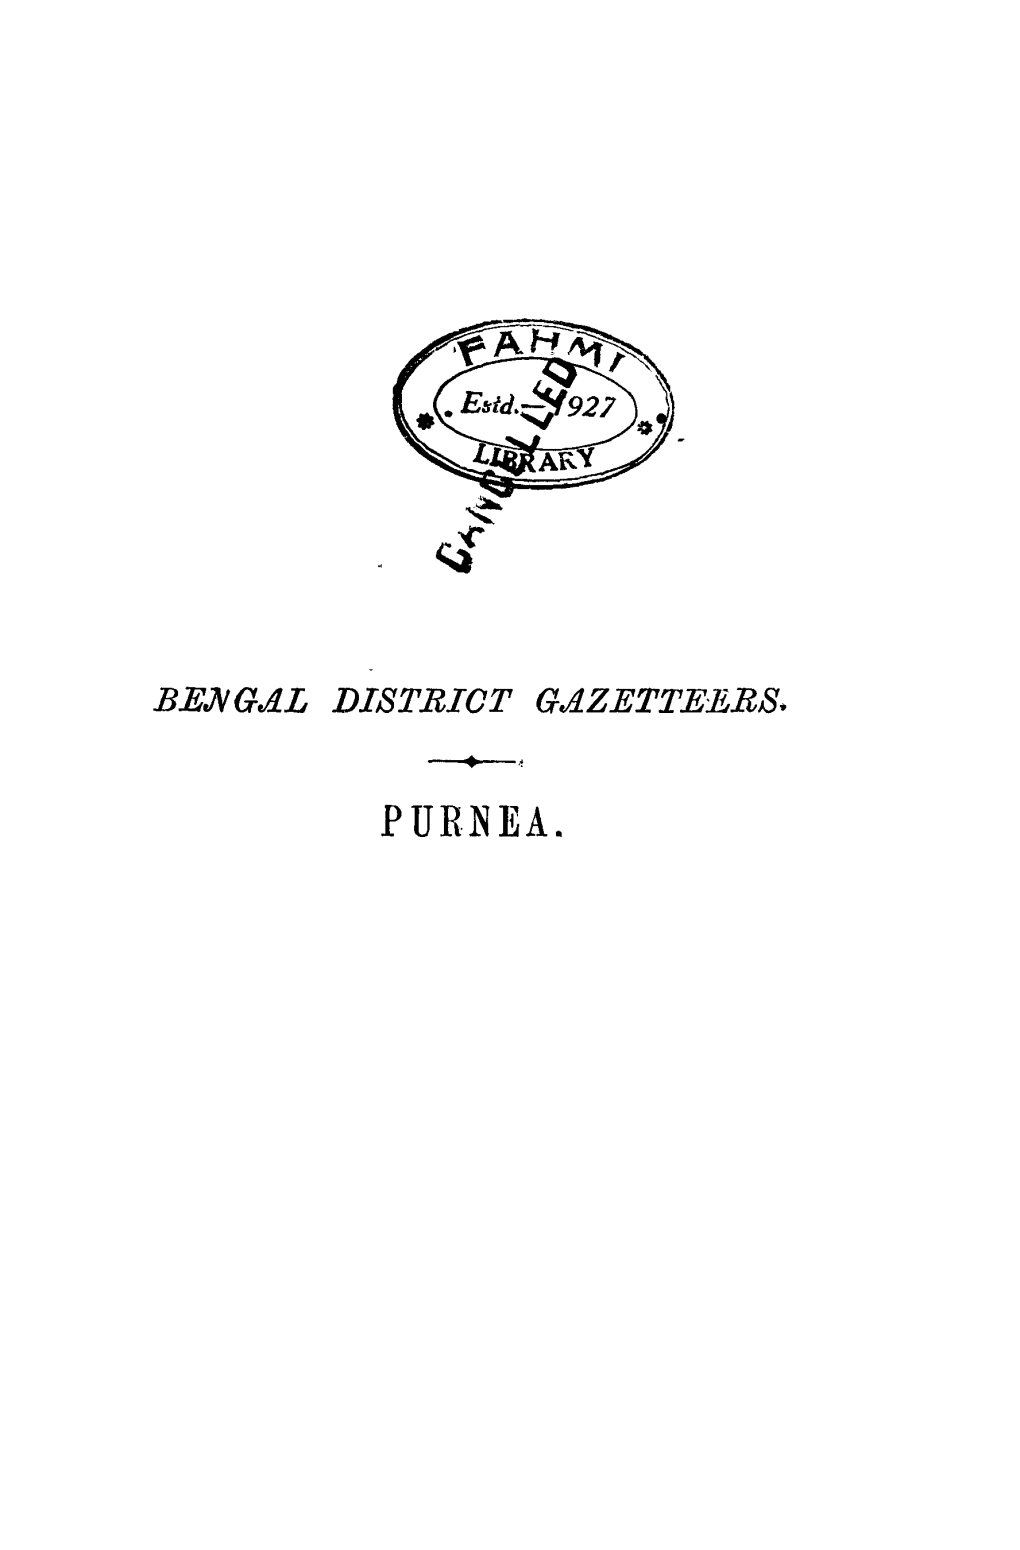 Purjea. Bengal District Gazetteers